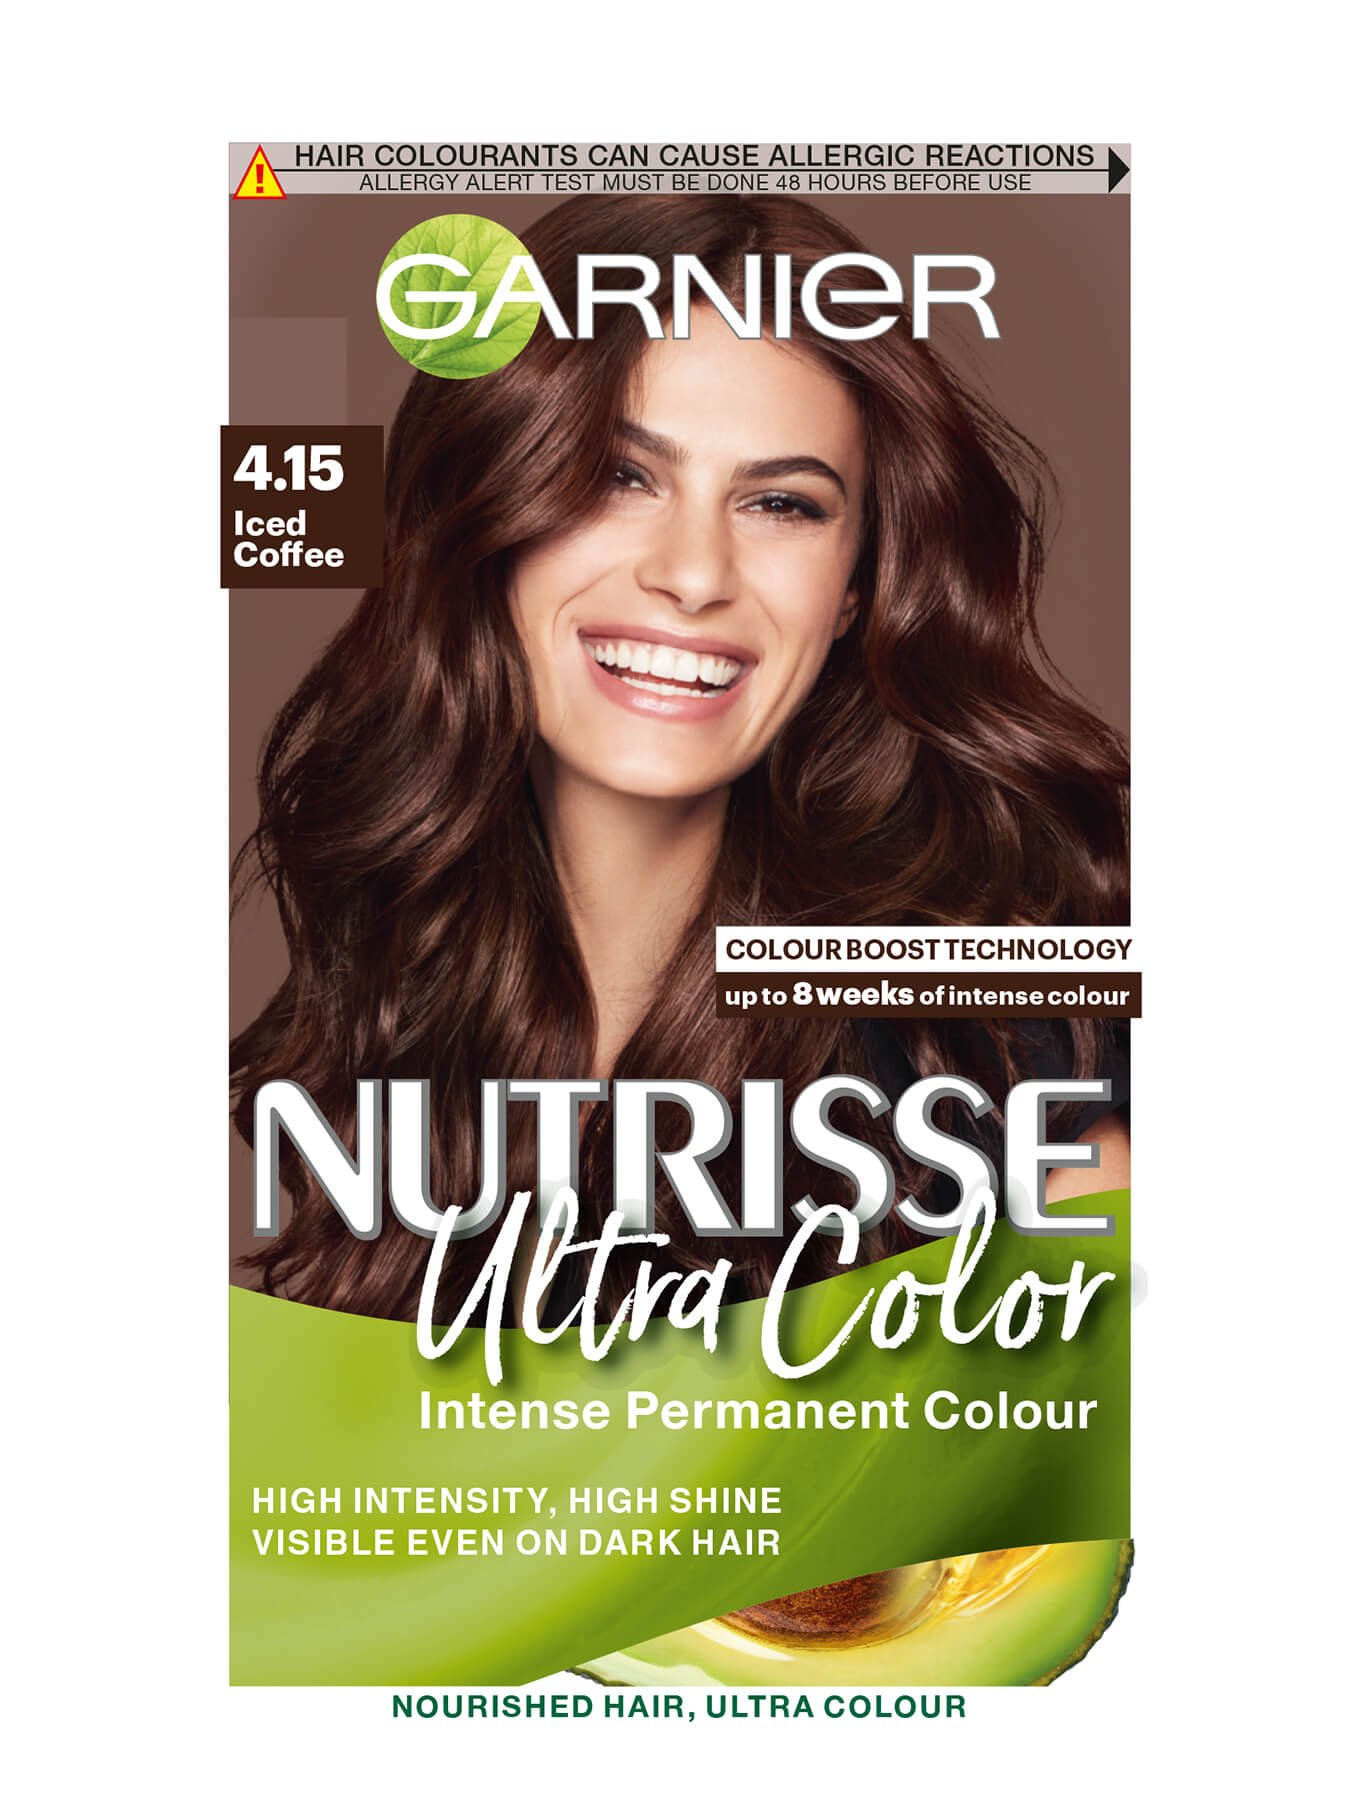 Garnier Nutrisse Ultra Colour in 415 Iced Coffee  Beauty Bulletin